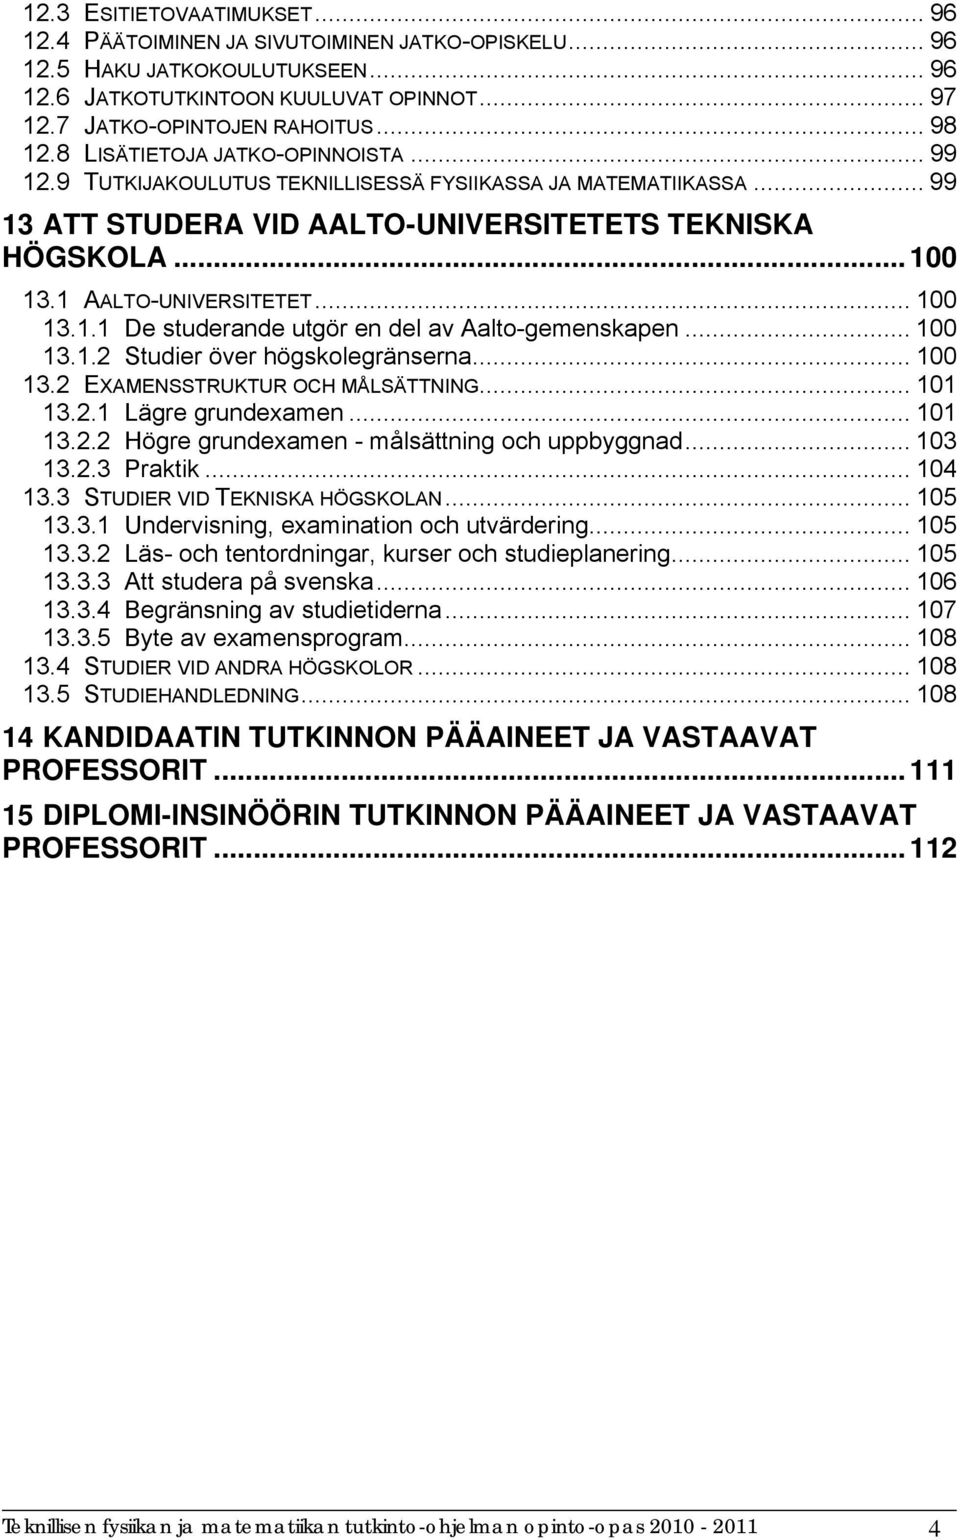 .. 100 13.1.1 De studerande utgör en del av Aalto-gemenskapen... 100 13.1.2 Studier över högskolegränserna... 100 13.2 EXAMENSSTRUKTUR OCH MÅLSÄTTNING... 101 13.2.1 Lägre grundexamen... 101 13.2.2 Högre grundexamen - målsättning och uppbyggnad.